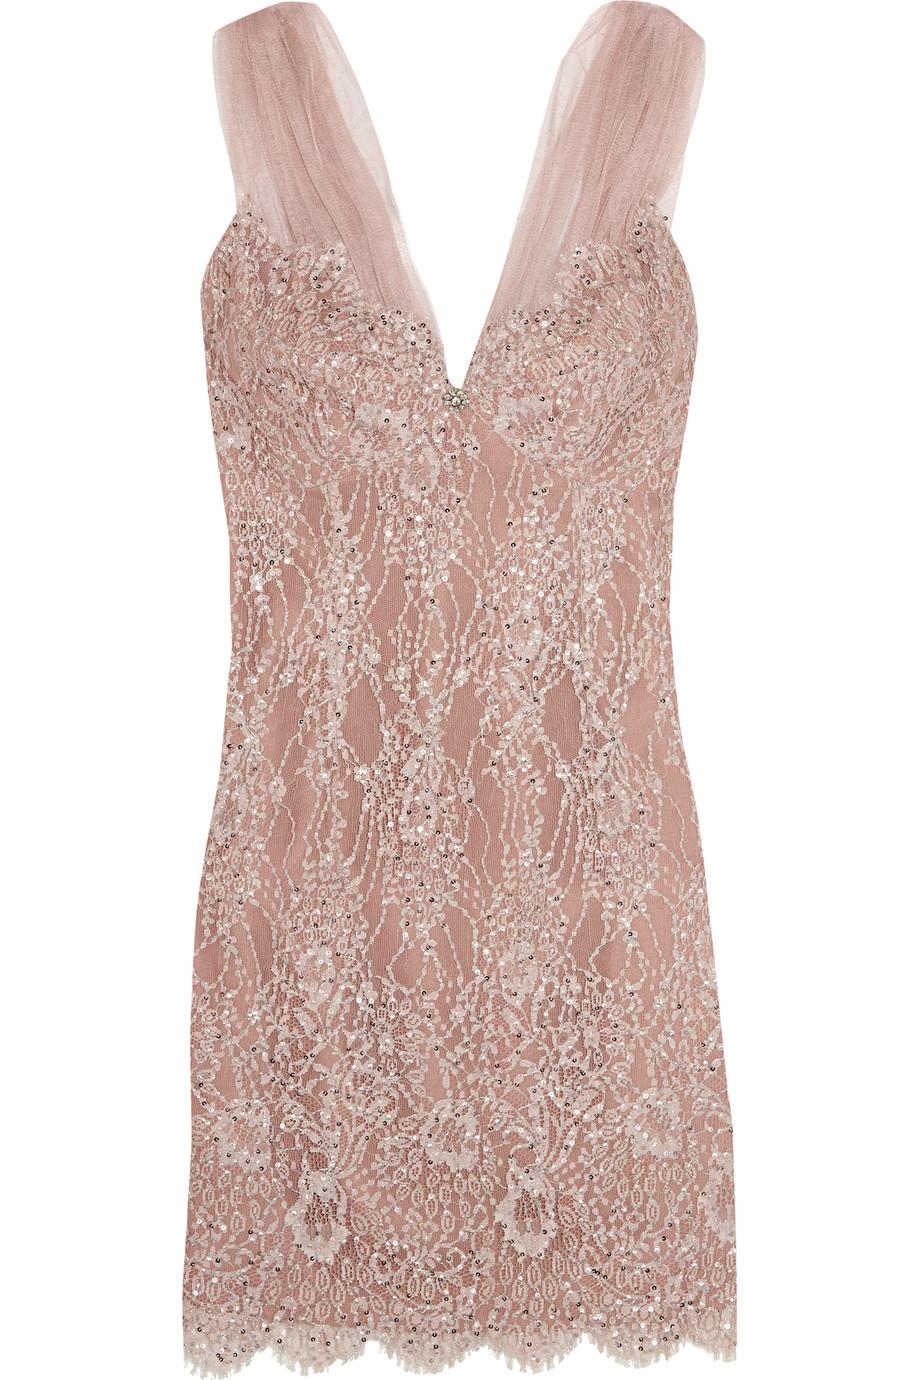 Jenny Packham Bead-embellished Lace Dress | ModeSens